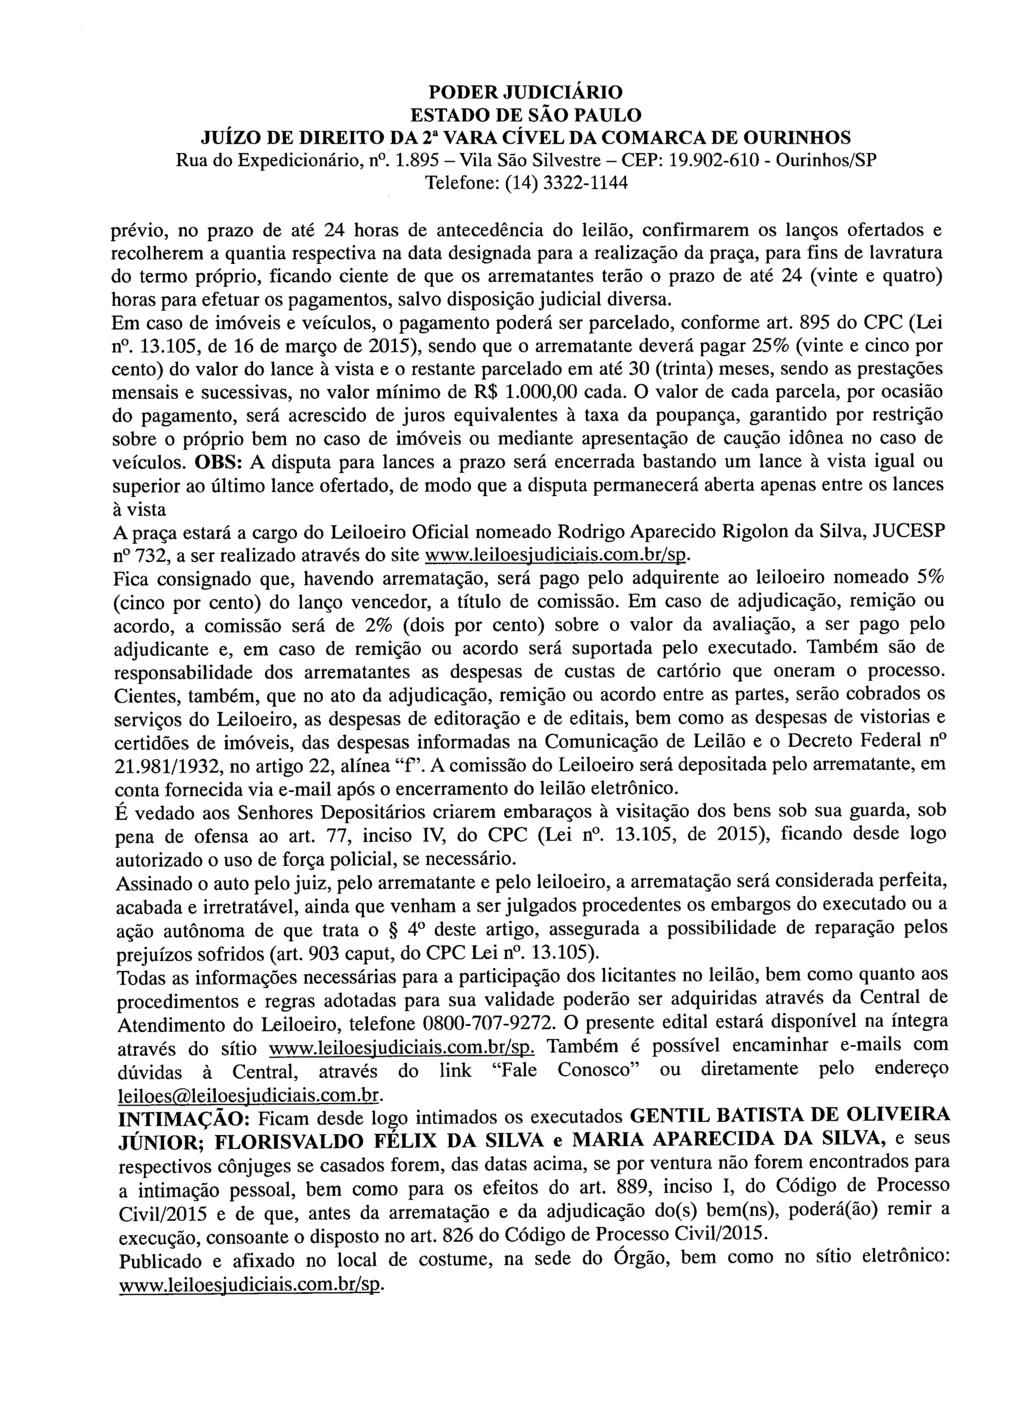 fls. 79 Este documento foi protocolado em 05/04/2017 às 15:23, é cópia do original assinado digitalmente por CAIUBI RABELO DE SOUZA.